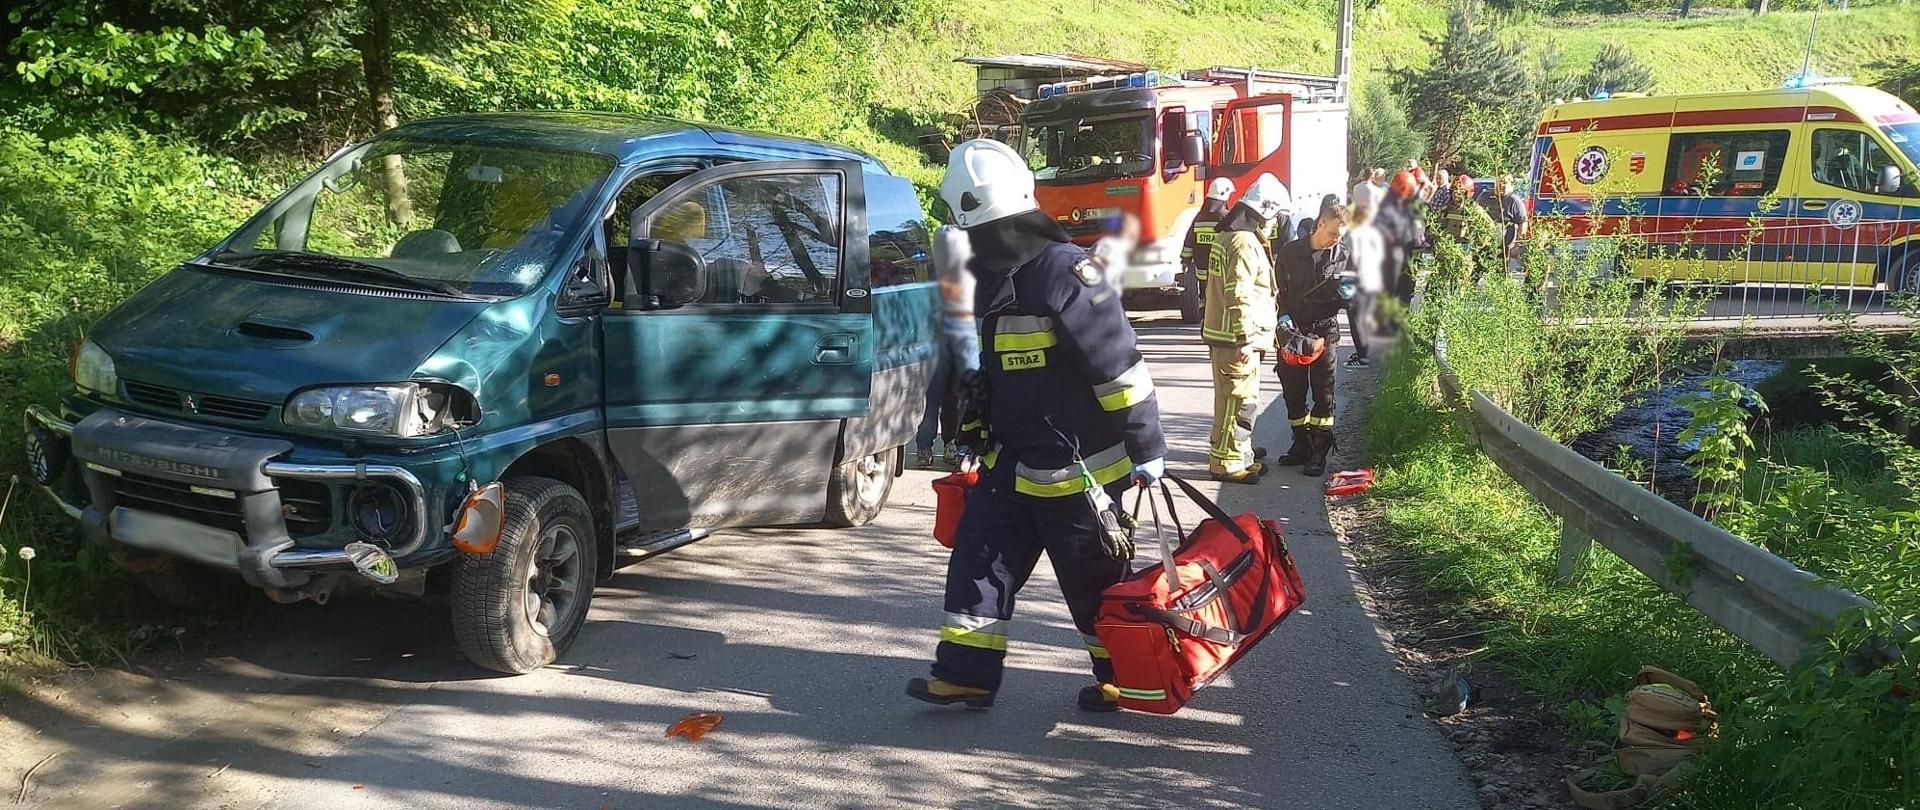 Samochód osobowy, strażak z torbą medyczną idący po drodze gminnej. W tle ludzie na drodze, samochód pożarniczy oraz karetka Pogotowia ratunkowego.